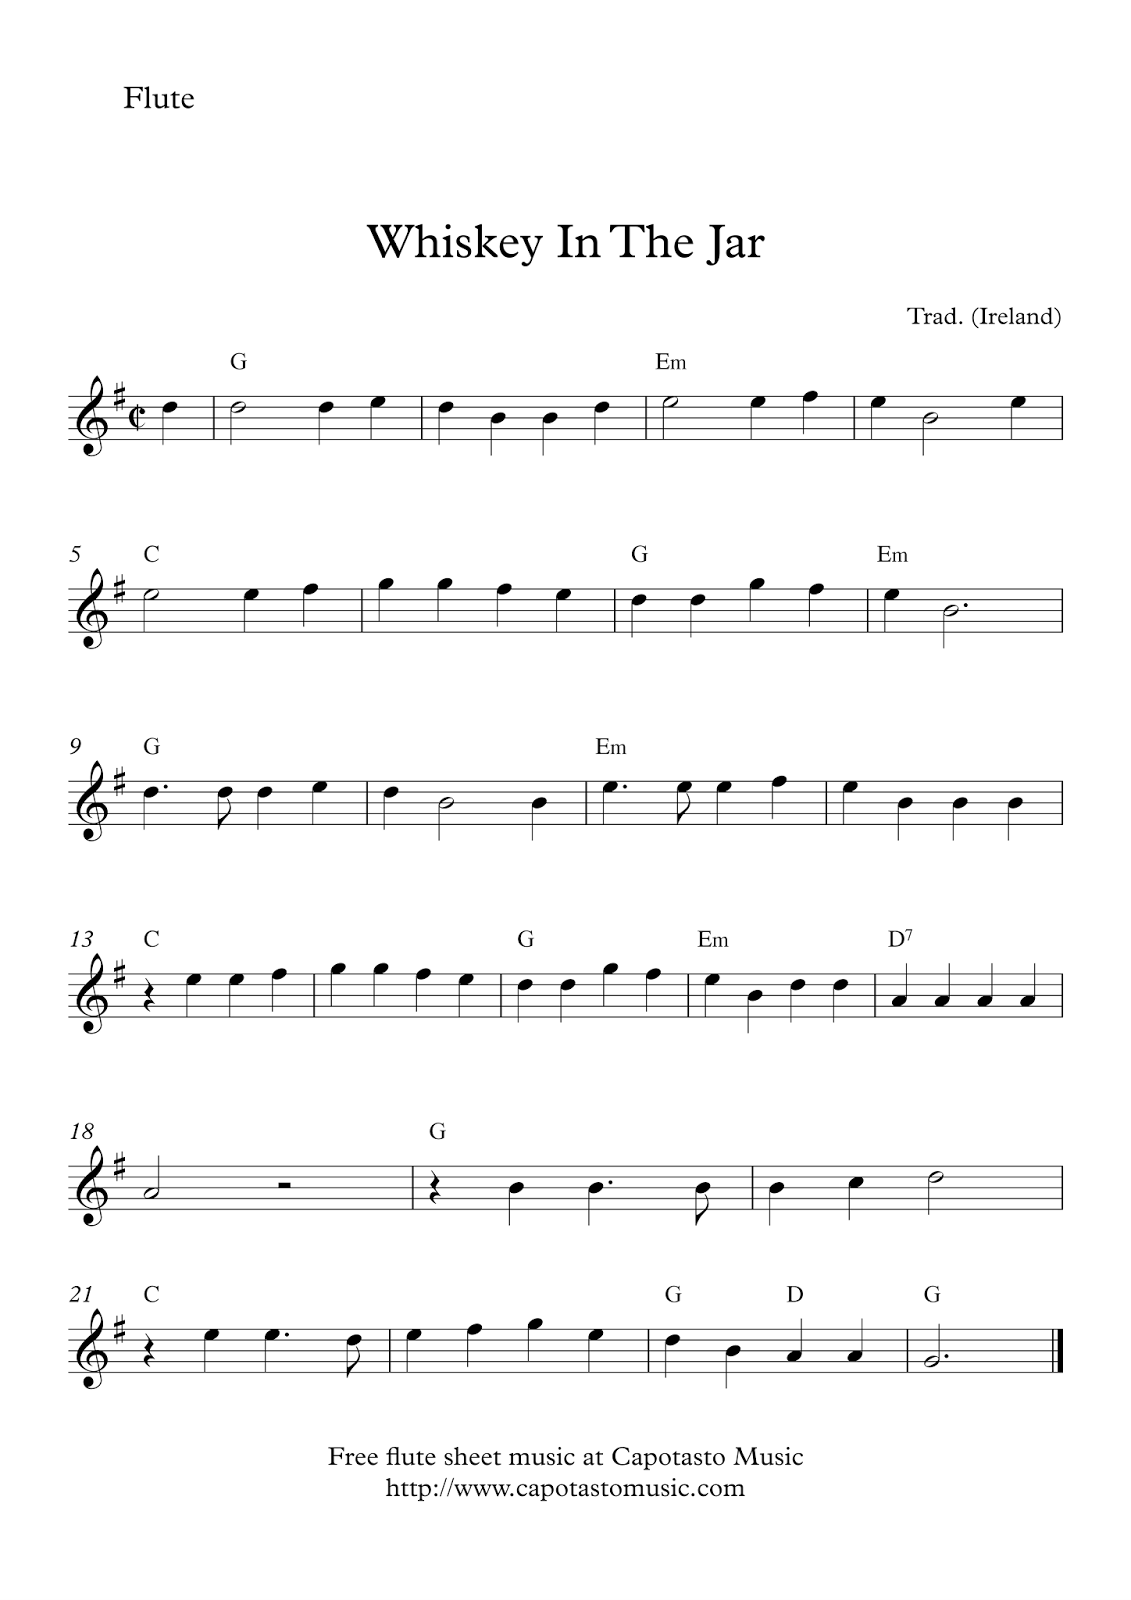 Easy Sheet Music For Beginners: Free Easy Flute Sheet Music inside Free Printable Flute Sheet Music